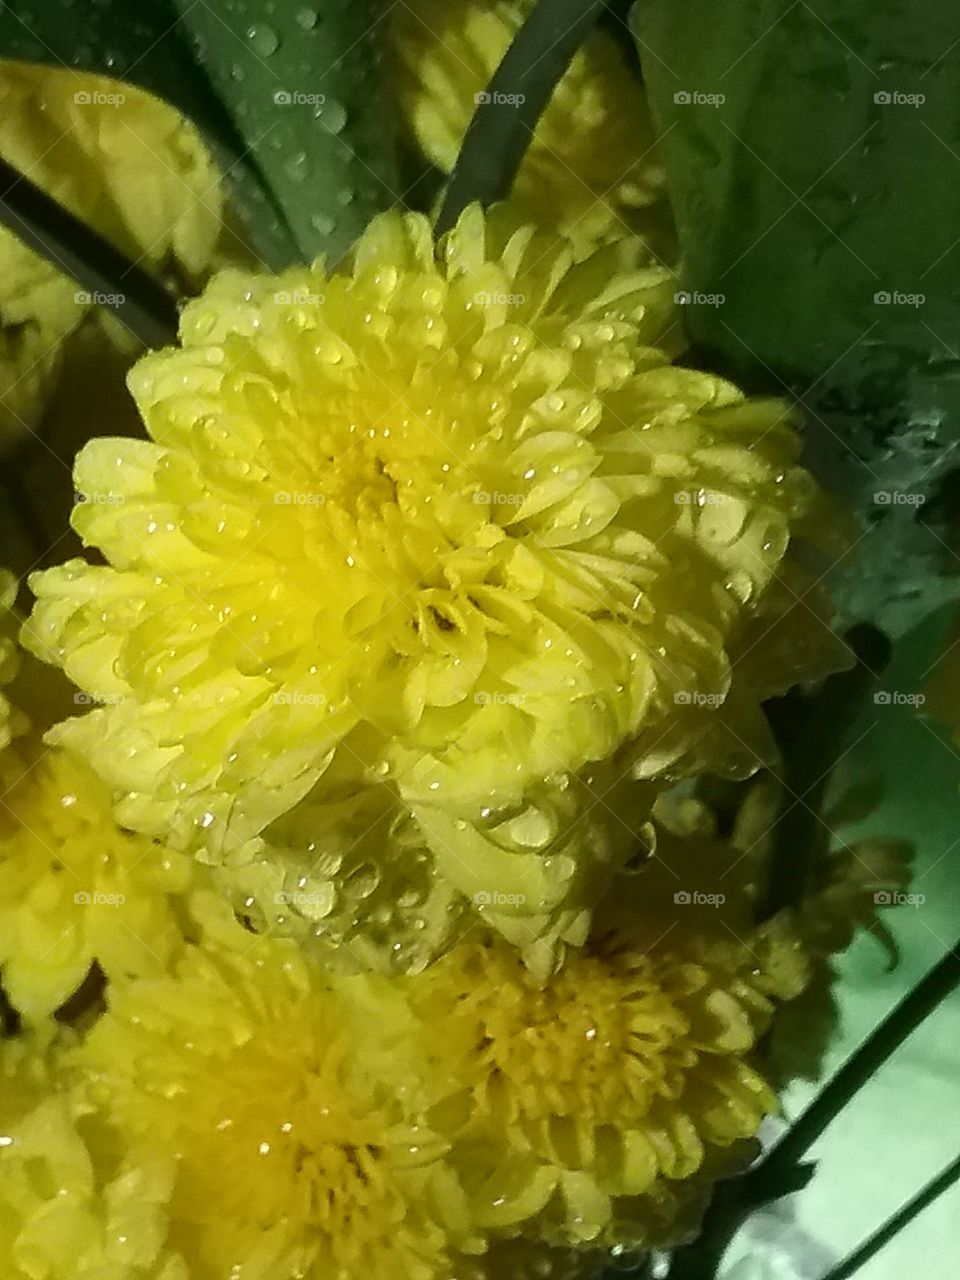 Happy fresh Afarican Marigold flower for you.